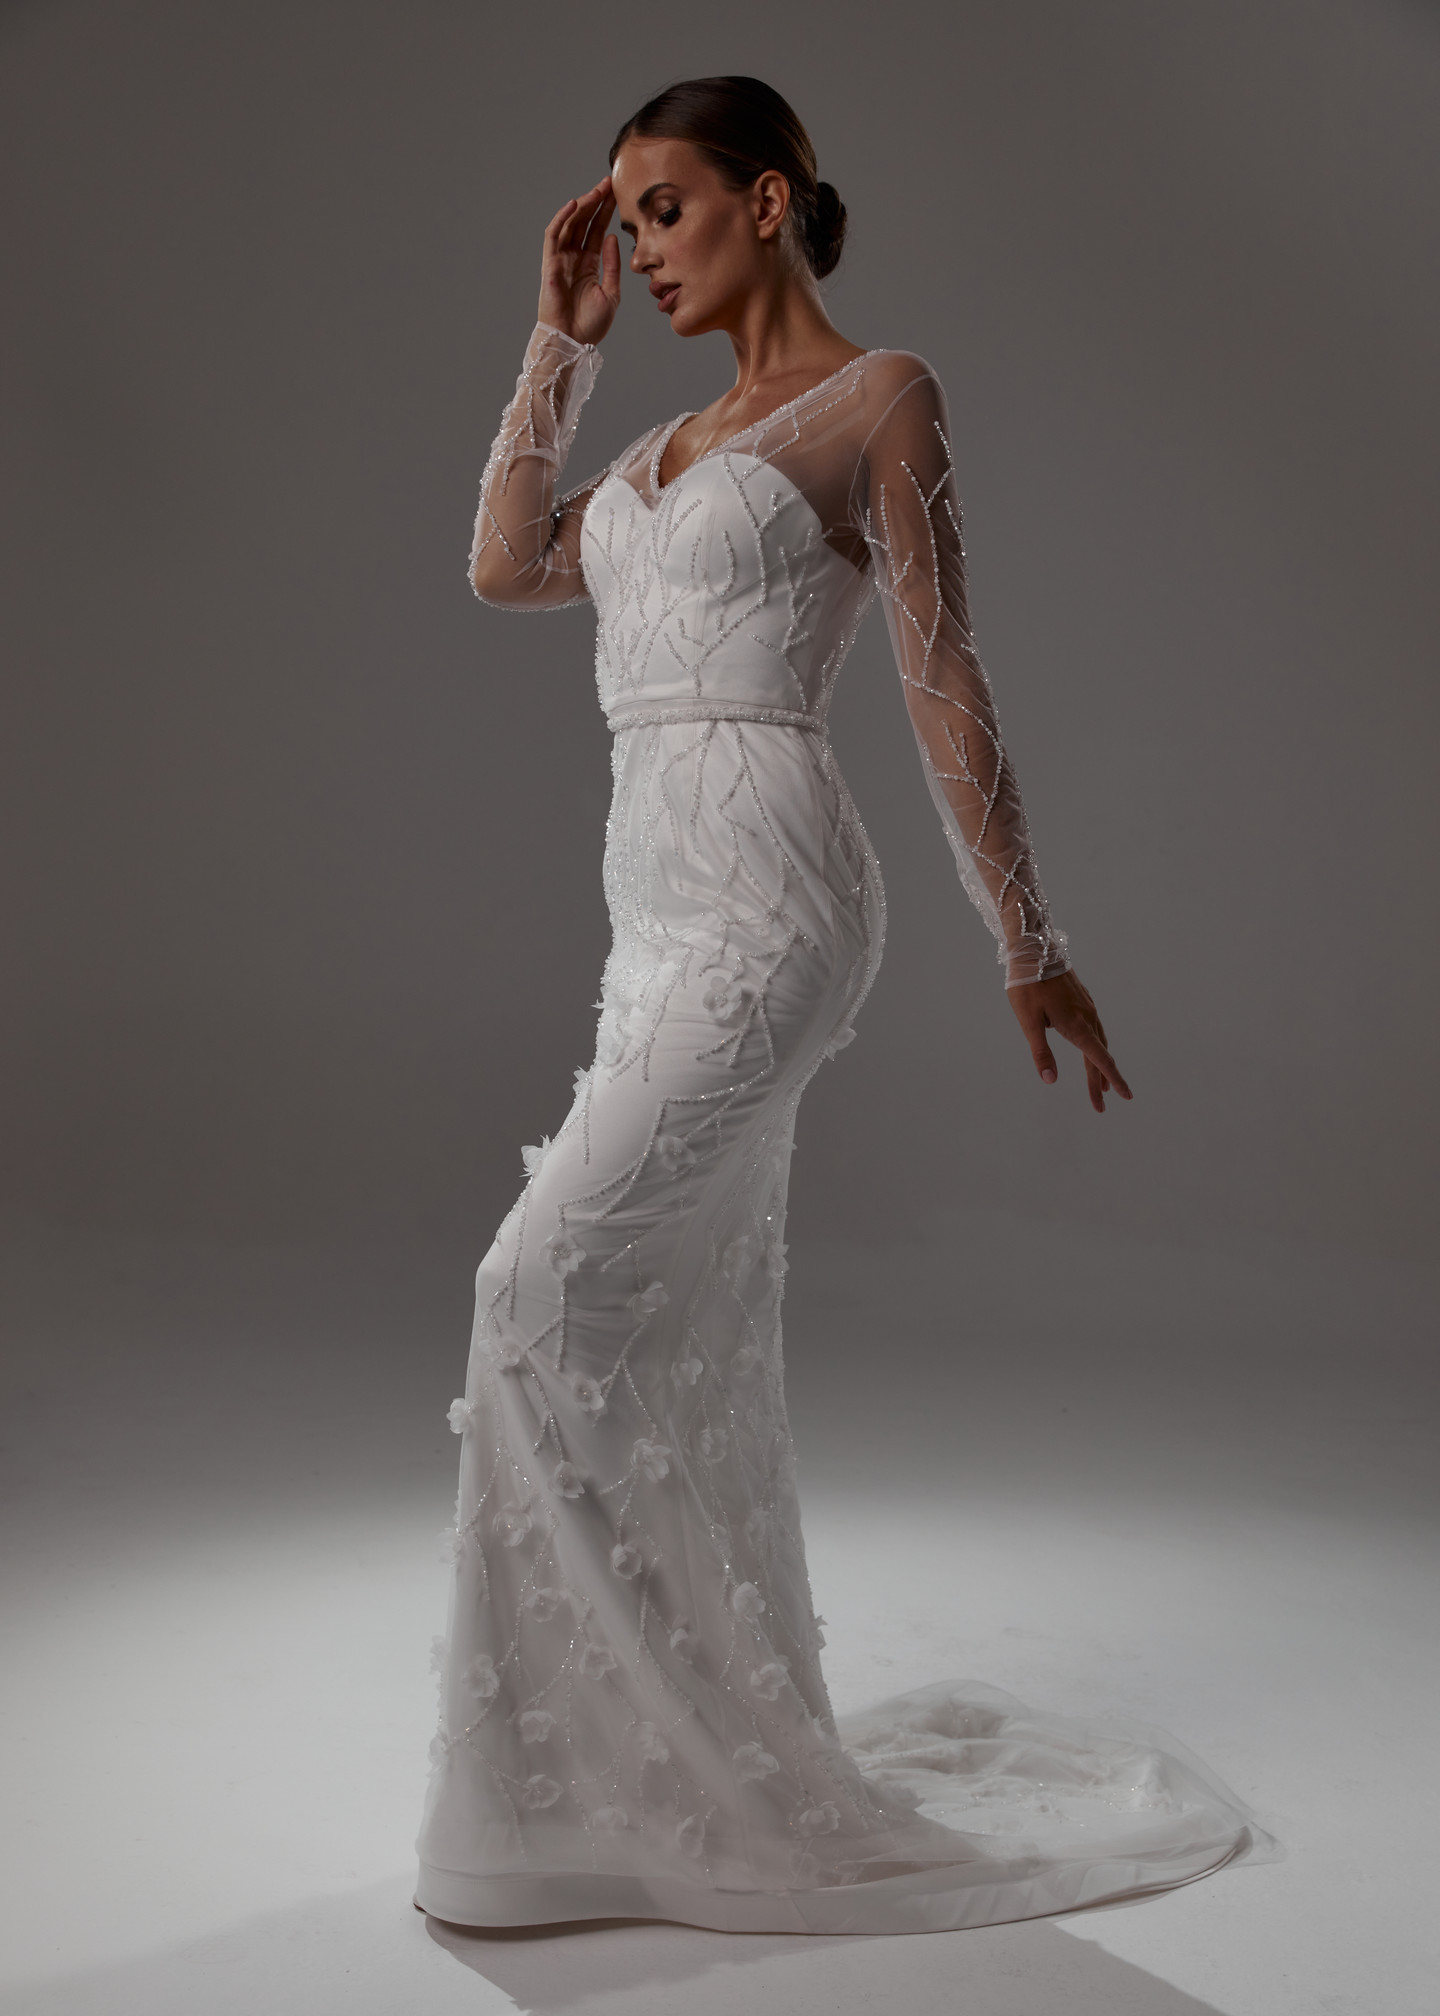 Платье Вера, 2021, одежда, платье, свадебное, молочно-белый, вышивка, прямой силуэт, рукава, шлейф